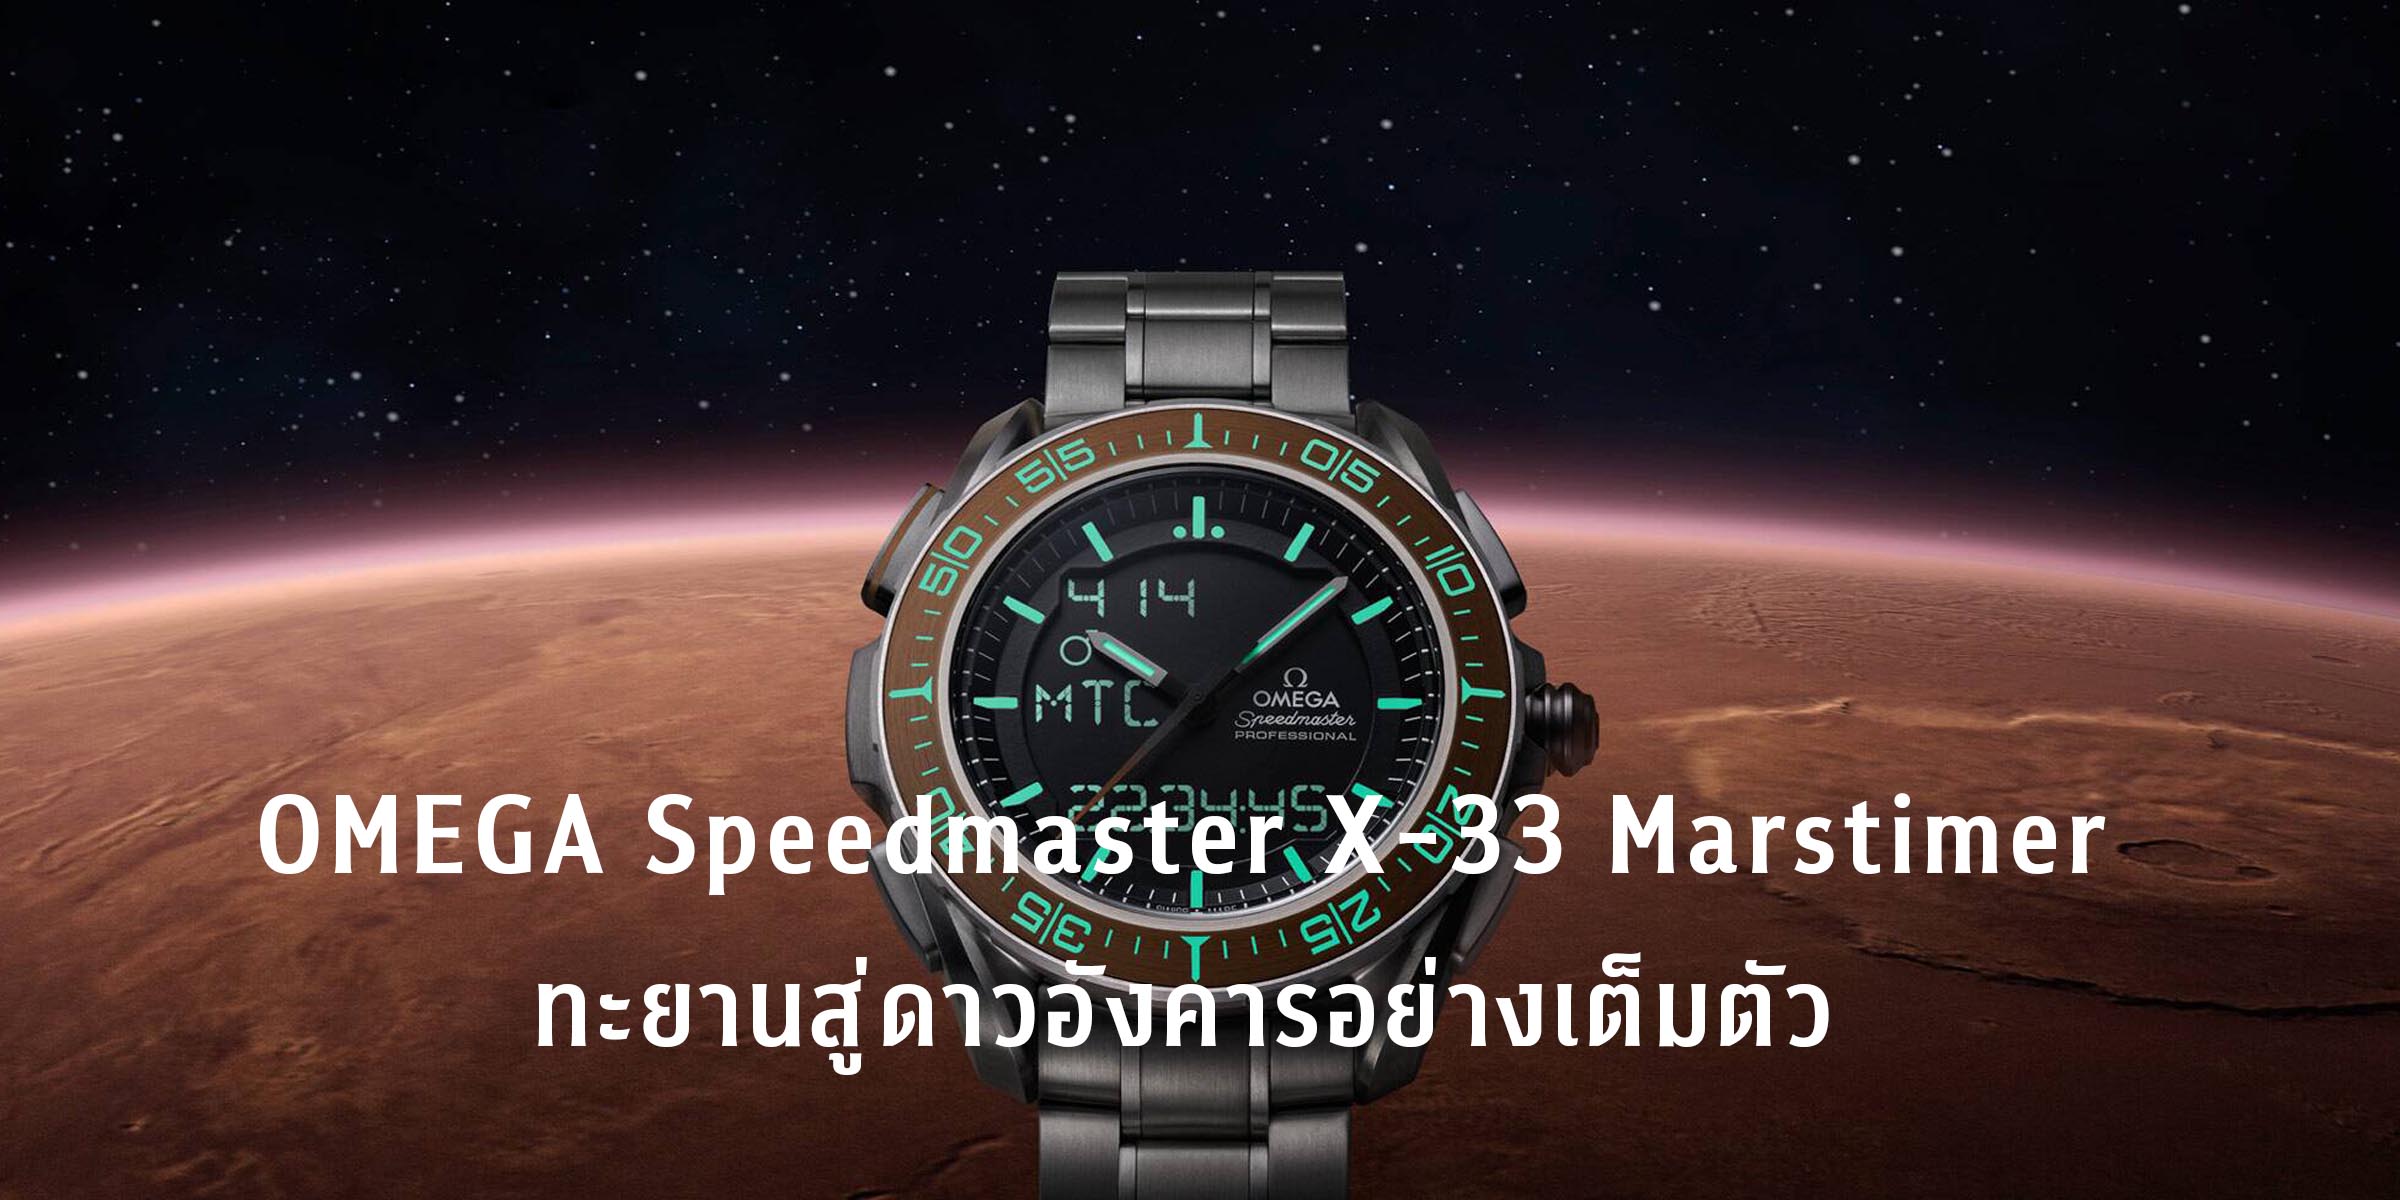 OMEGA Speedmaster X-33 The Marstimer